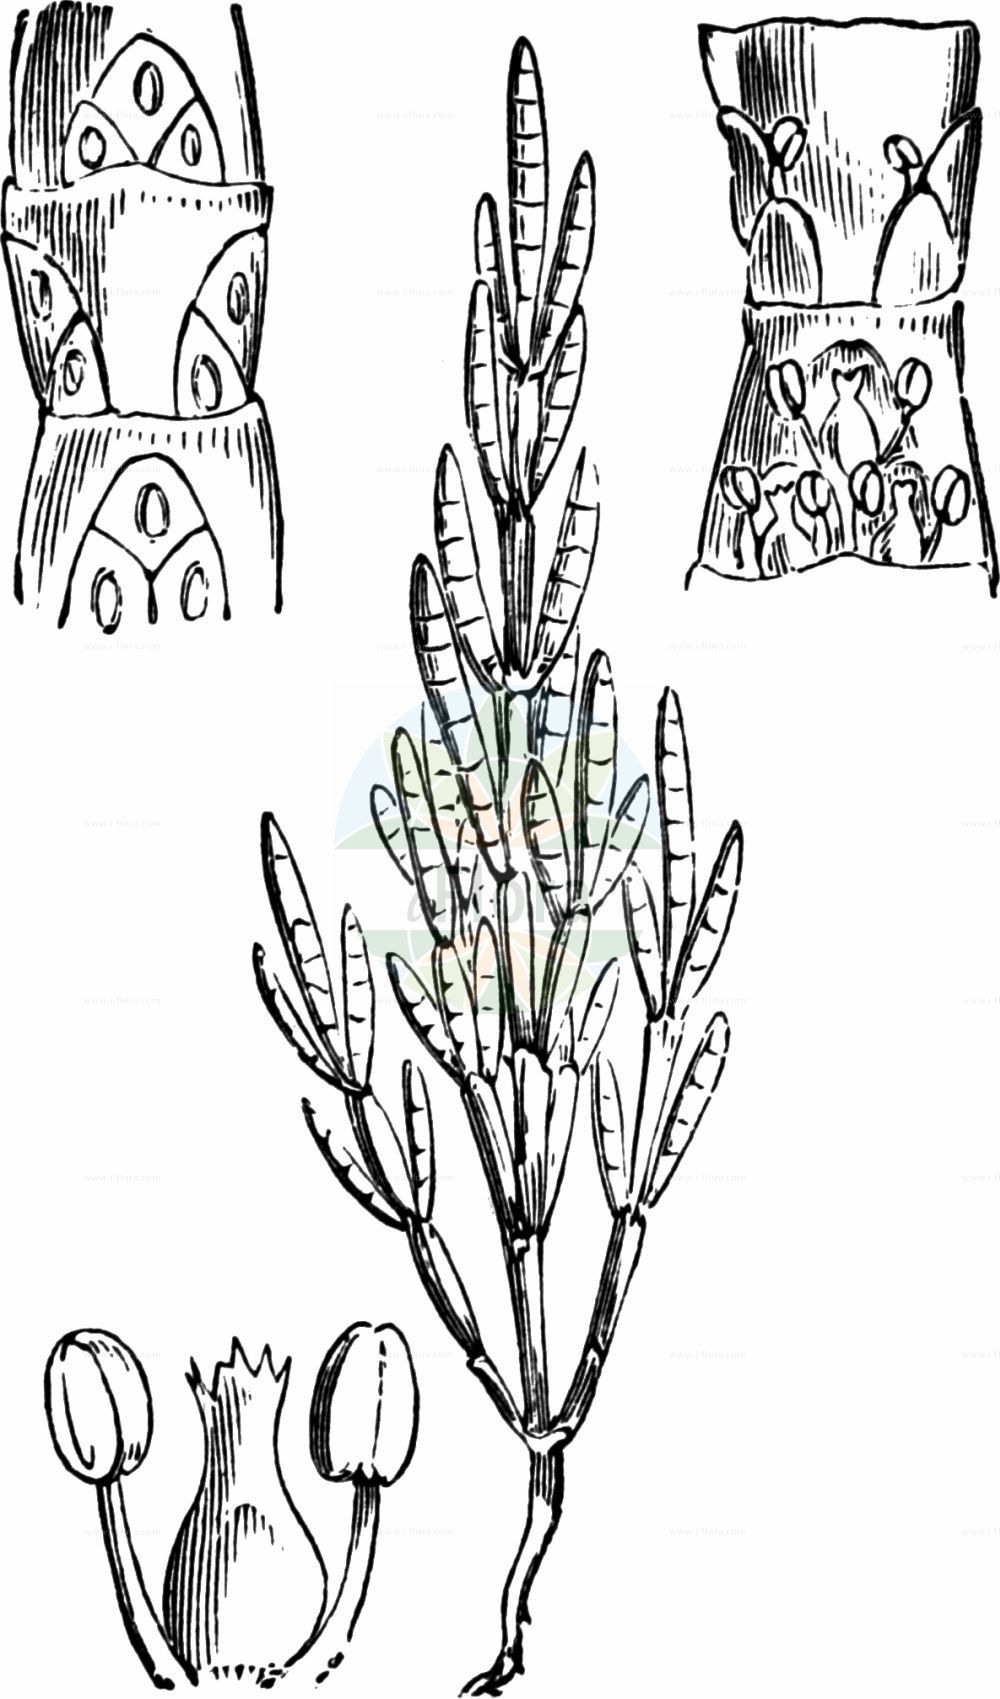 Historische Abbildung von Salicornia europaea (Europäischer Queller - Common Glasswort). Das Bild zeigt Blatt, Bluete, Frucht und Same. ---- Historical Drawing of Salicornia europaea (Europäischer Queller - Common Glasswort). The image is showing leaf, flower, fruit and seed.(Salicornia europaea,Europäischer Queller,Common Glasswort,Salicornia annua,Salicornia europaea,Salicornia herbacea,Europaeischer Queller,Gewoehnlicher Queller,Kurzaehren-Queller,Queller,Common Glasswort,Purple Glasswort,Glaucous Glasswort,Red Swampfire,Slender Grasswort,Salicornia,Queller,Glassworts,Amaranthaceae,Fuchsschwanzgewächse,Pigweed family,Blatt,Bluete,Frucht,Same,leaf,flower,fruit,seed,Fitch et al. (1880))